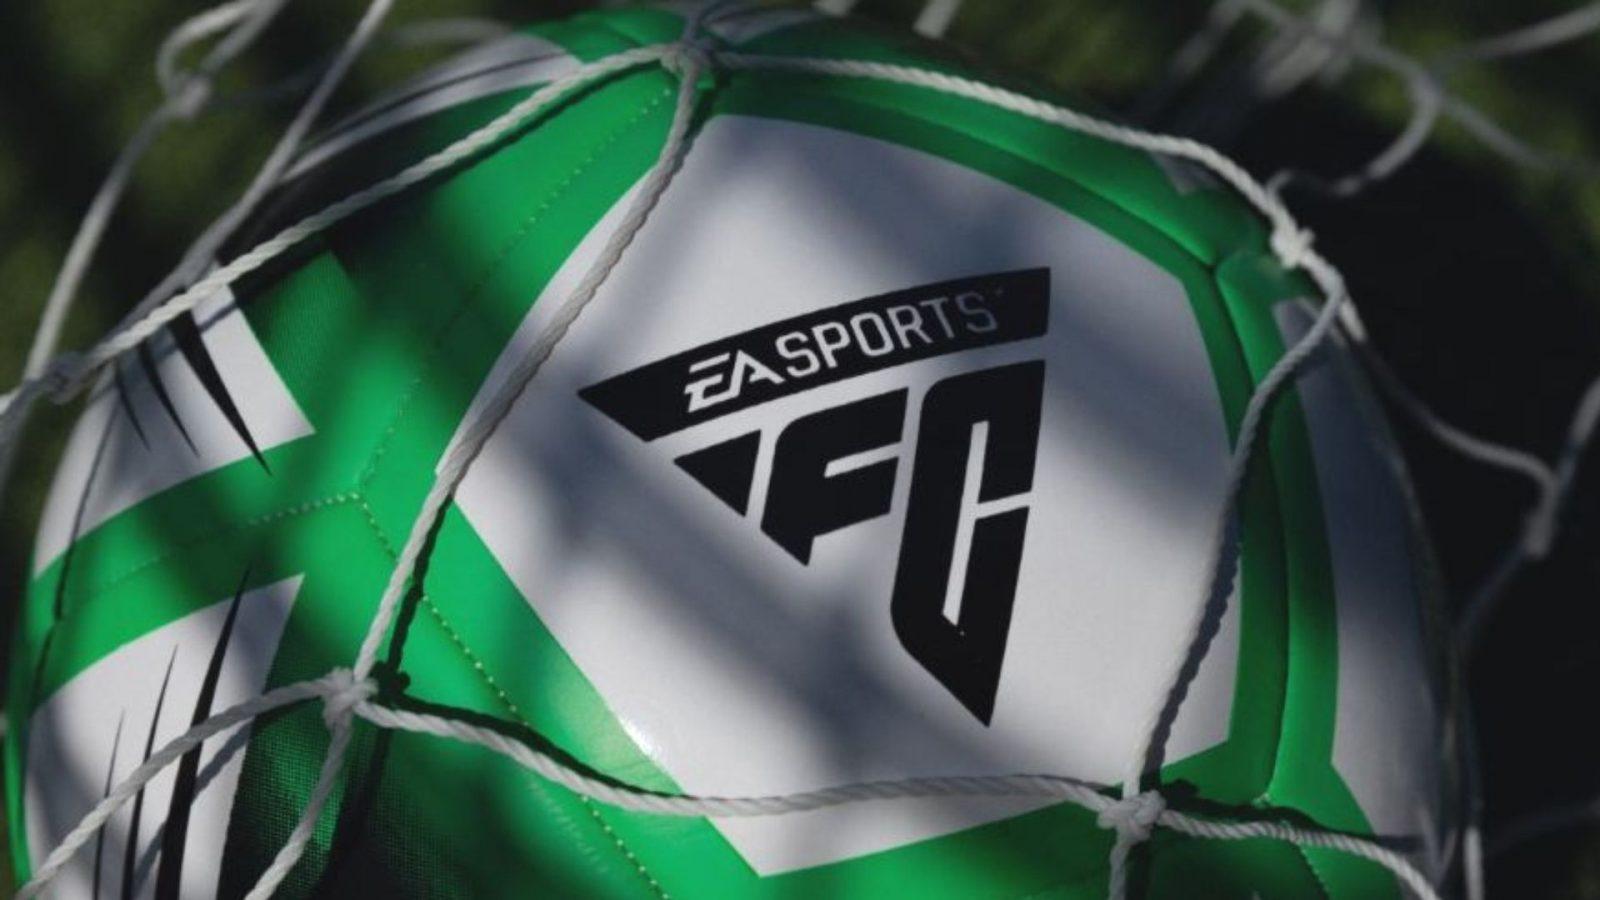 ea sports fc logo on football